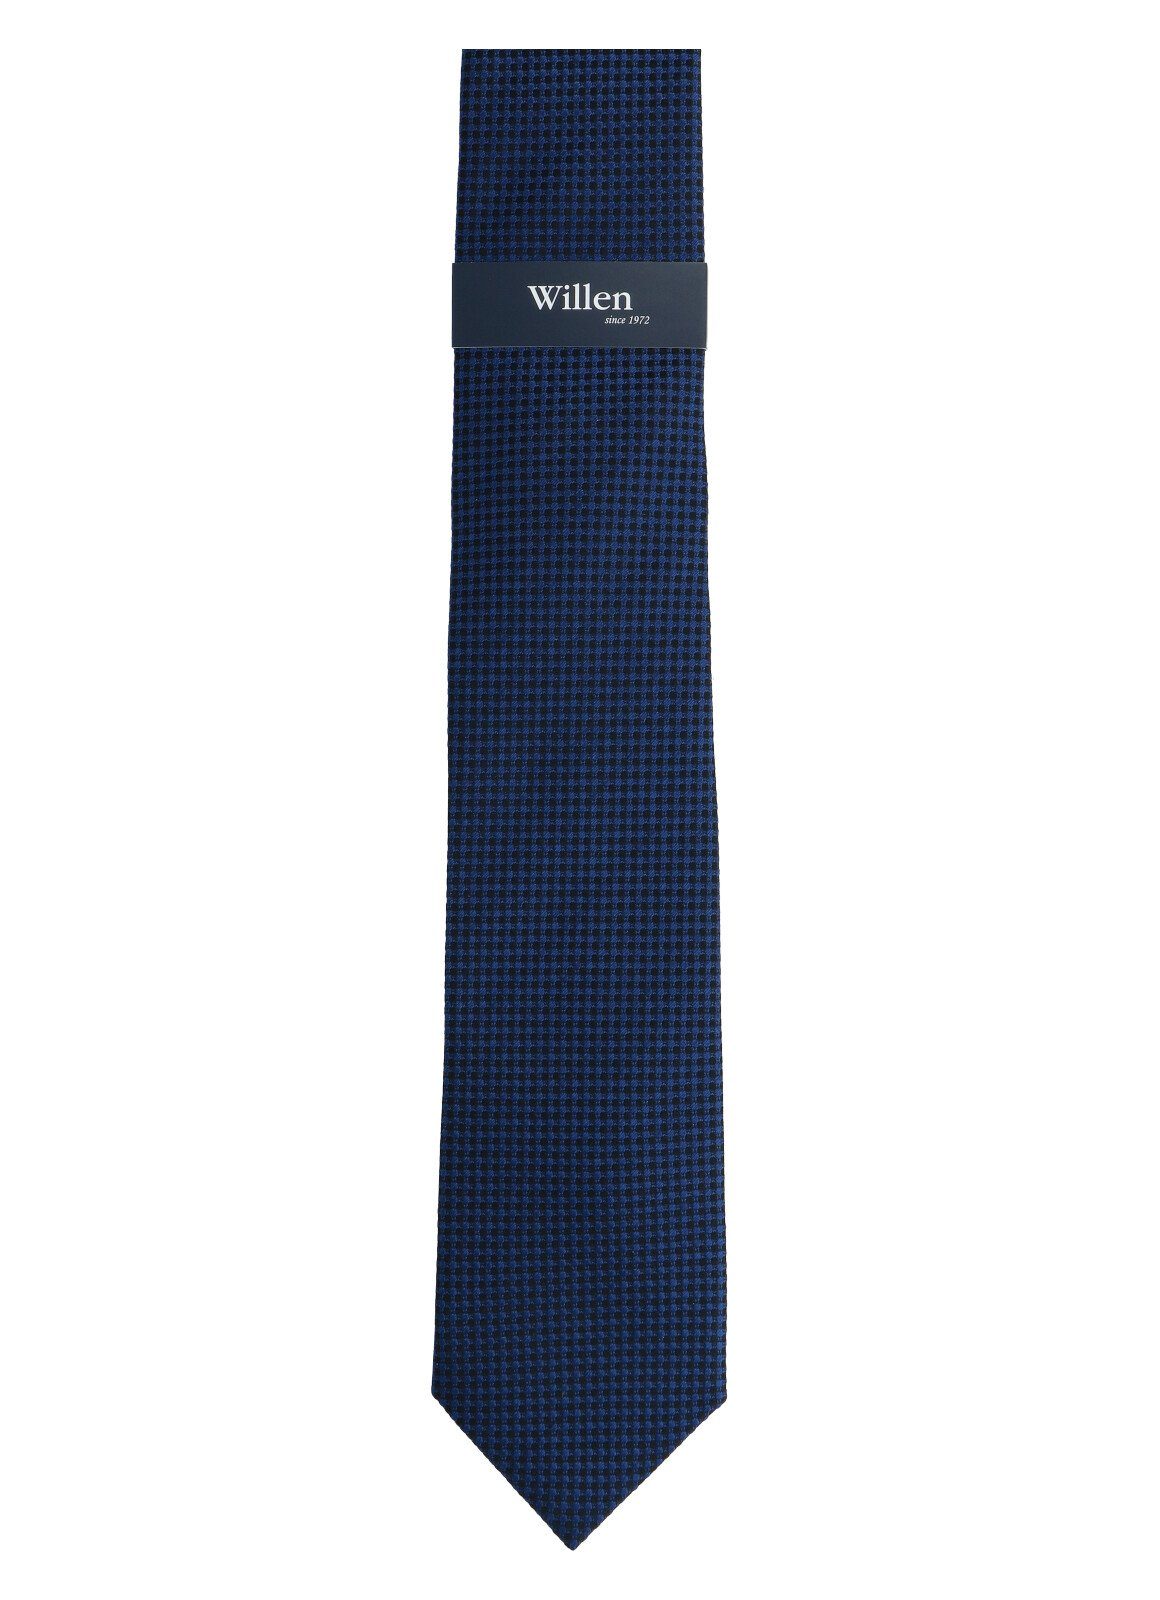 WILLEN nachtblau Willen Krawatte Krawatte